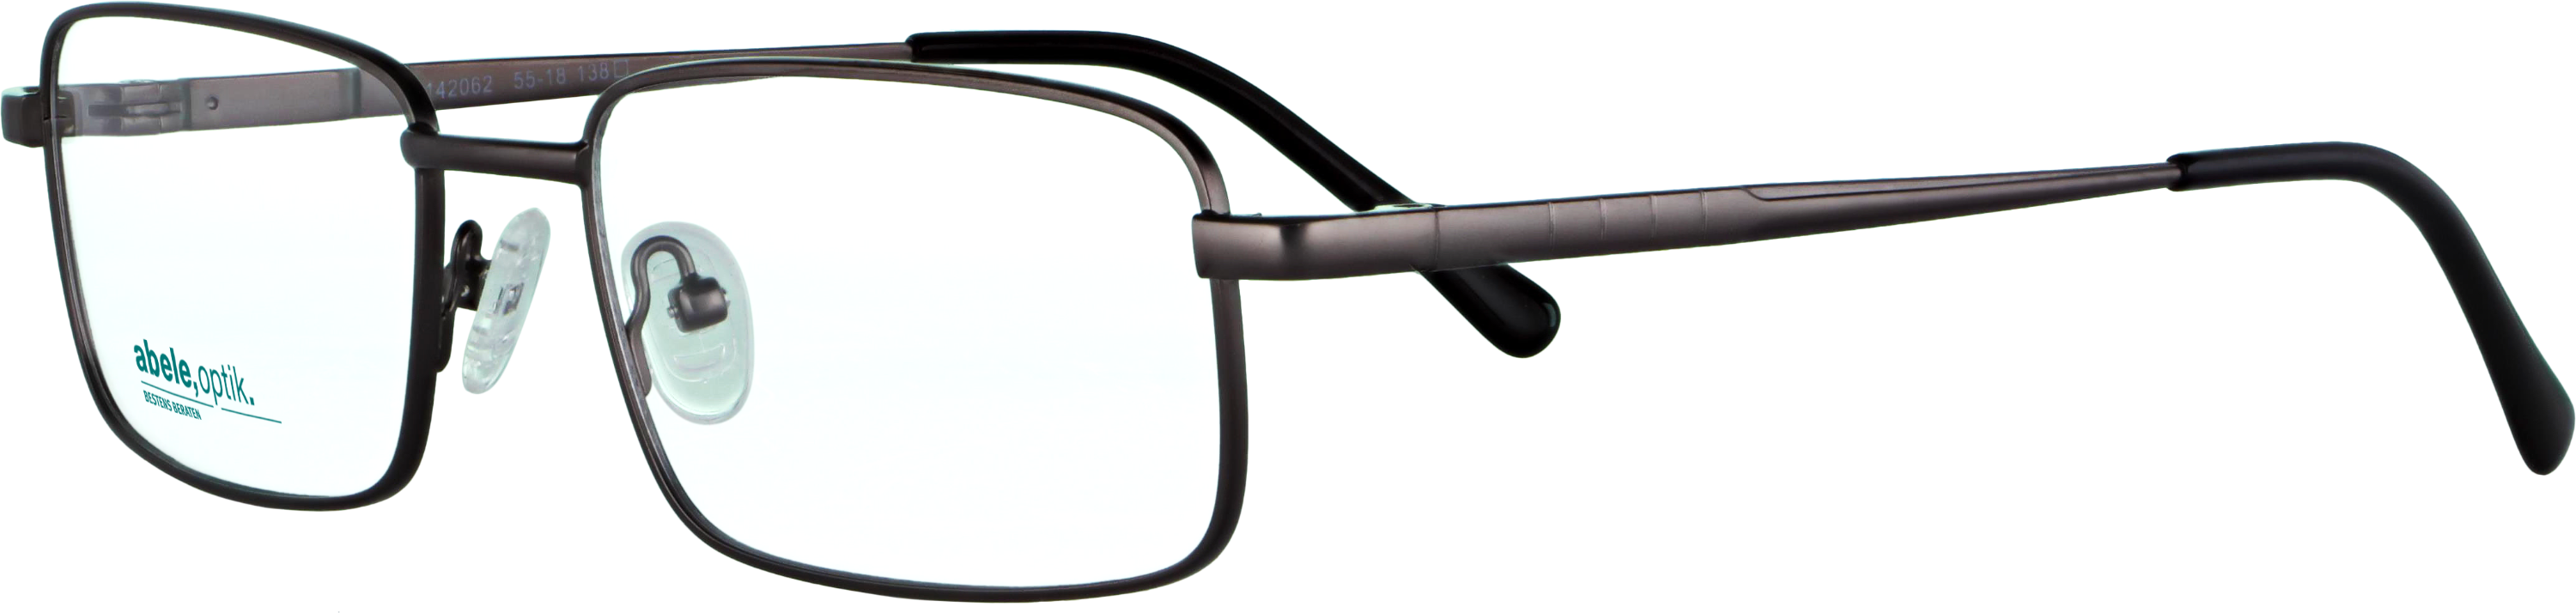 Das Bild zeigt die Korrektionsbrille 142062 von der Marke Abele Optik in dunkelbraun matt.